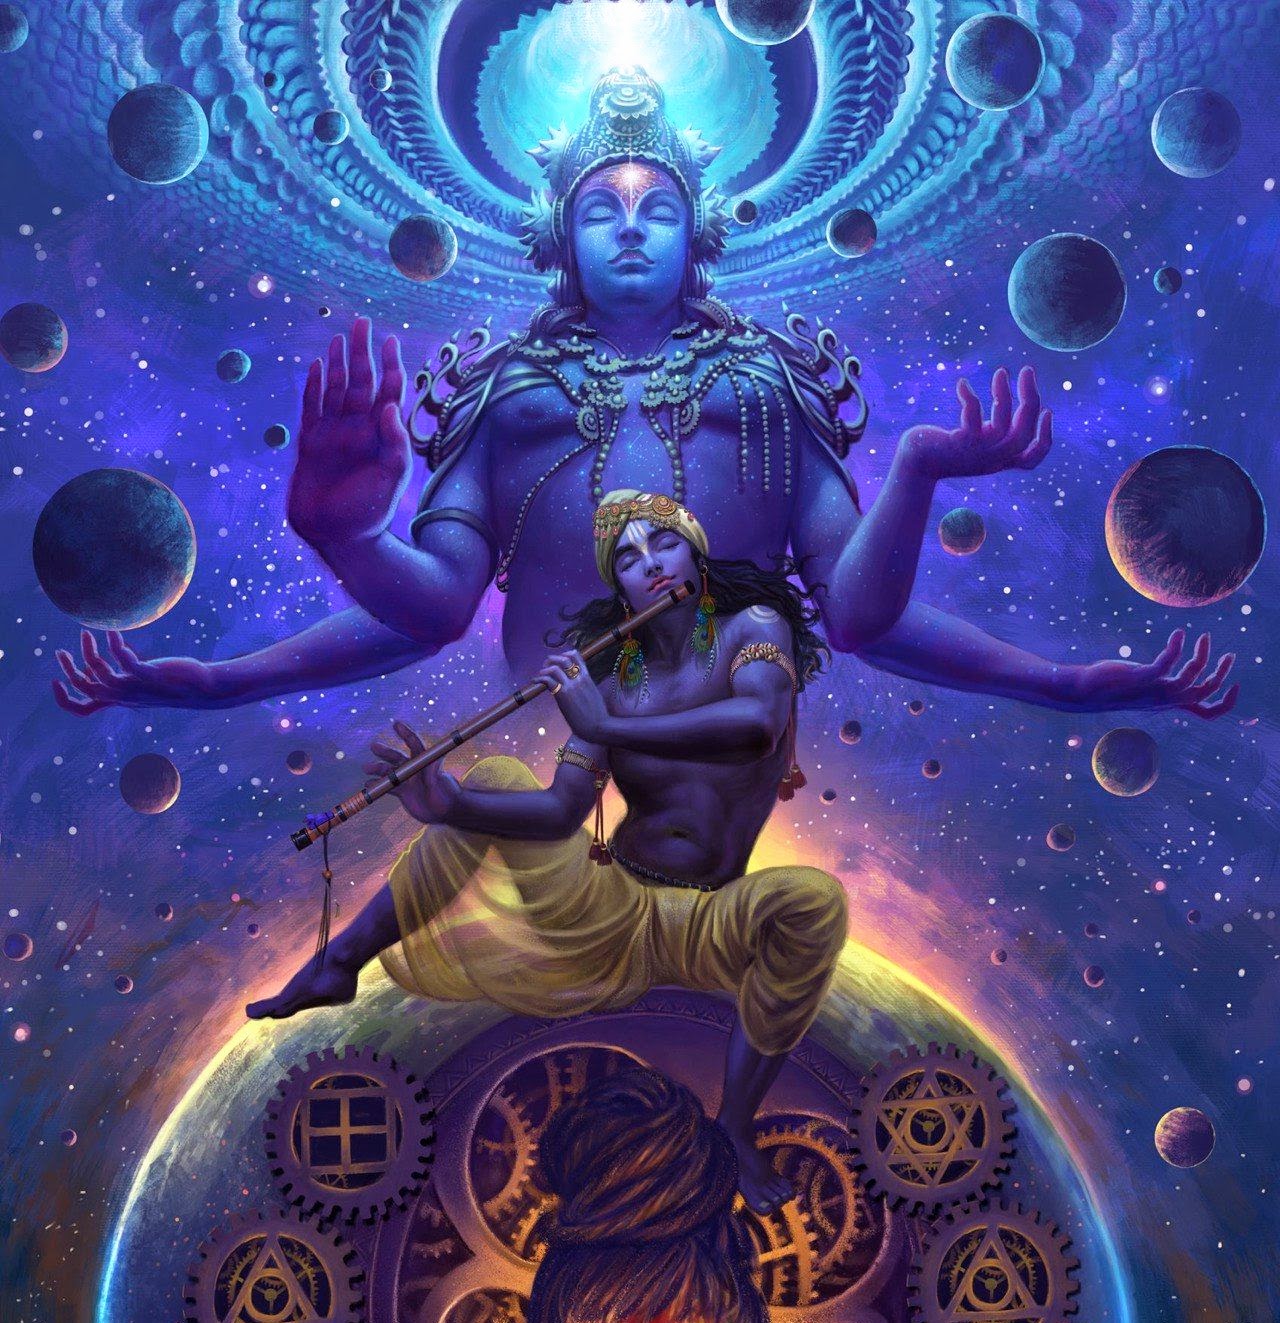 Lord Krishna and His Vishnu form